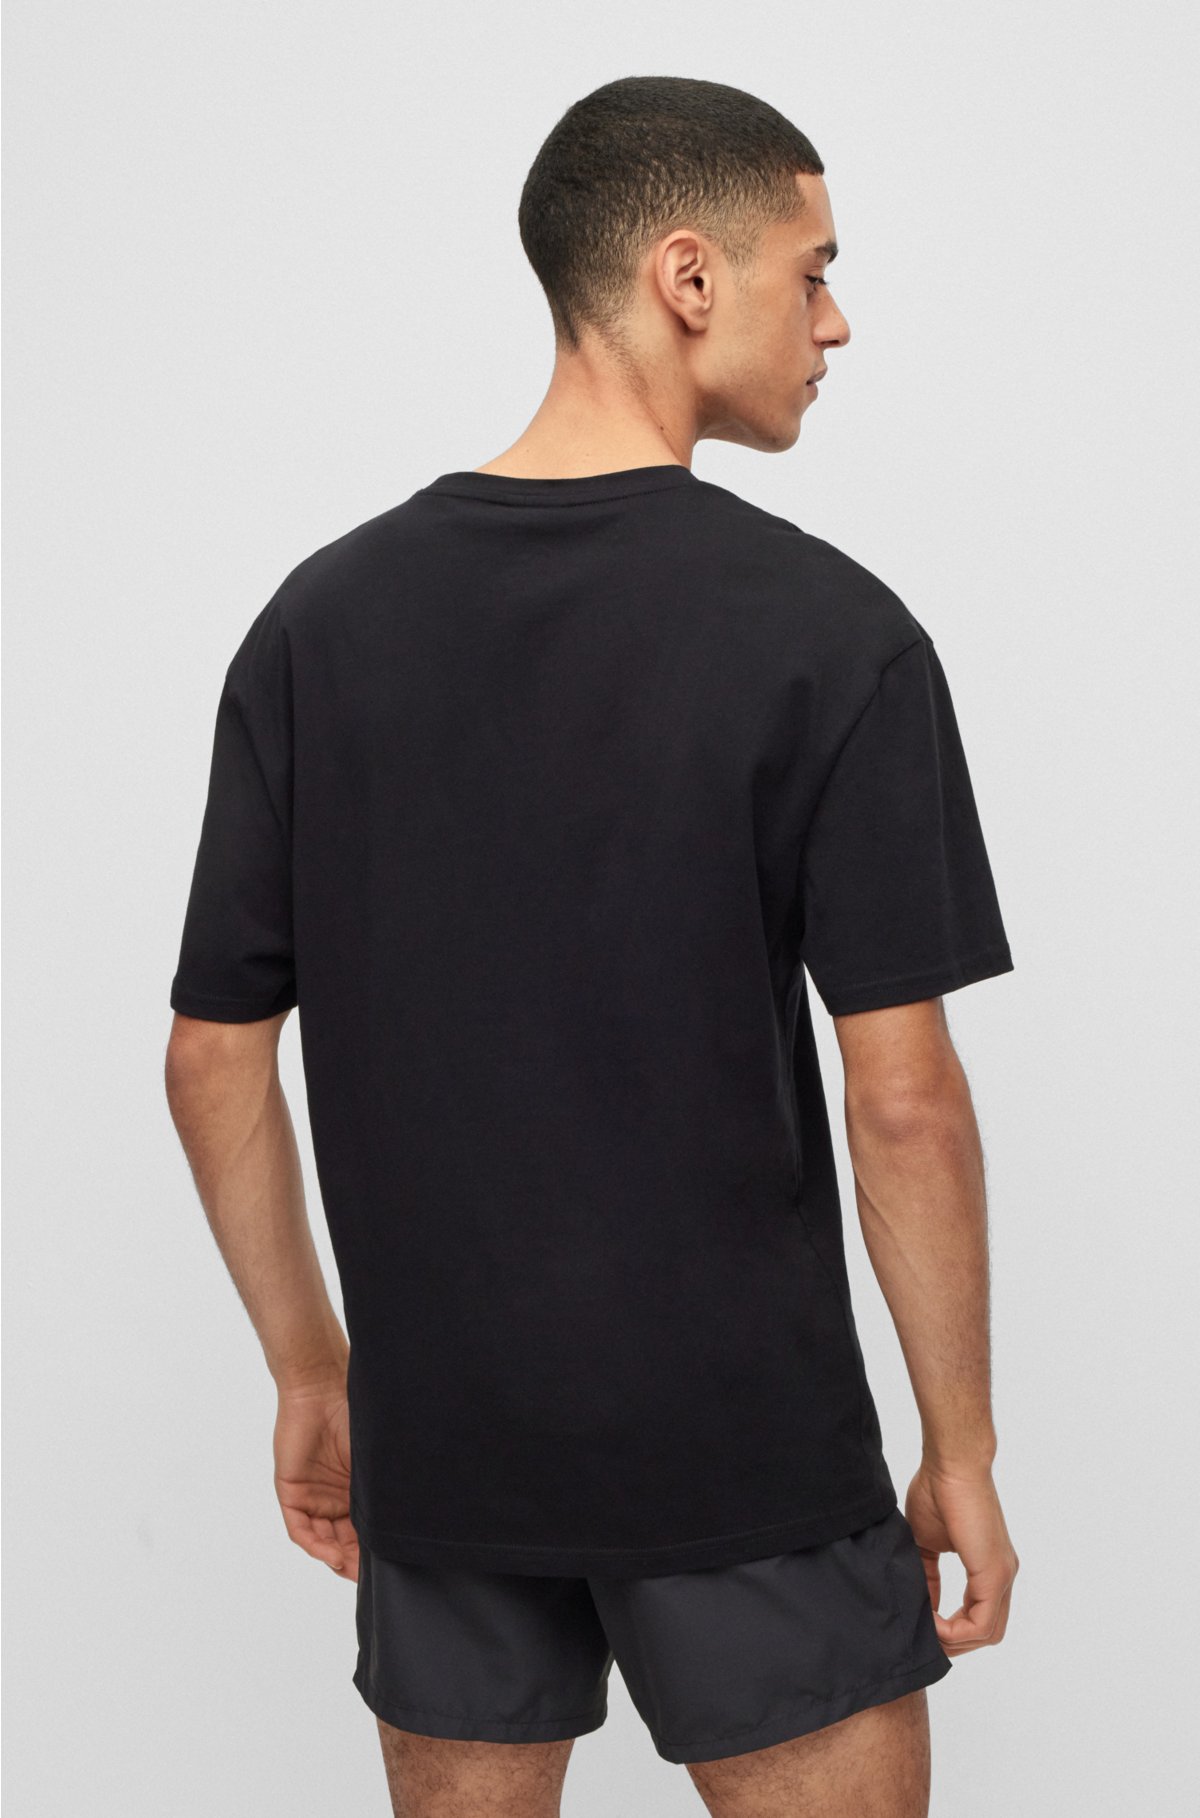 T-shirt Oversized de Algodão Orgânico Preta